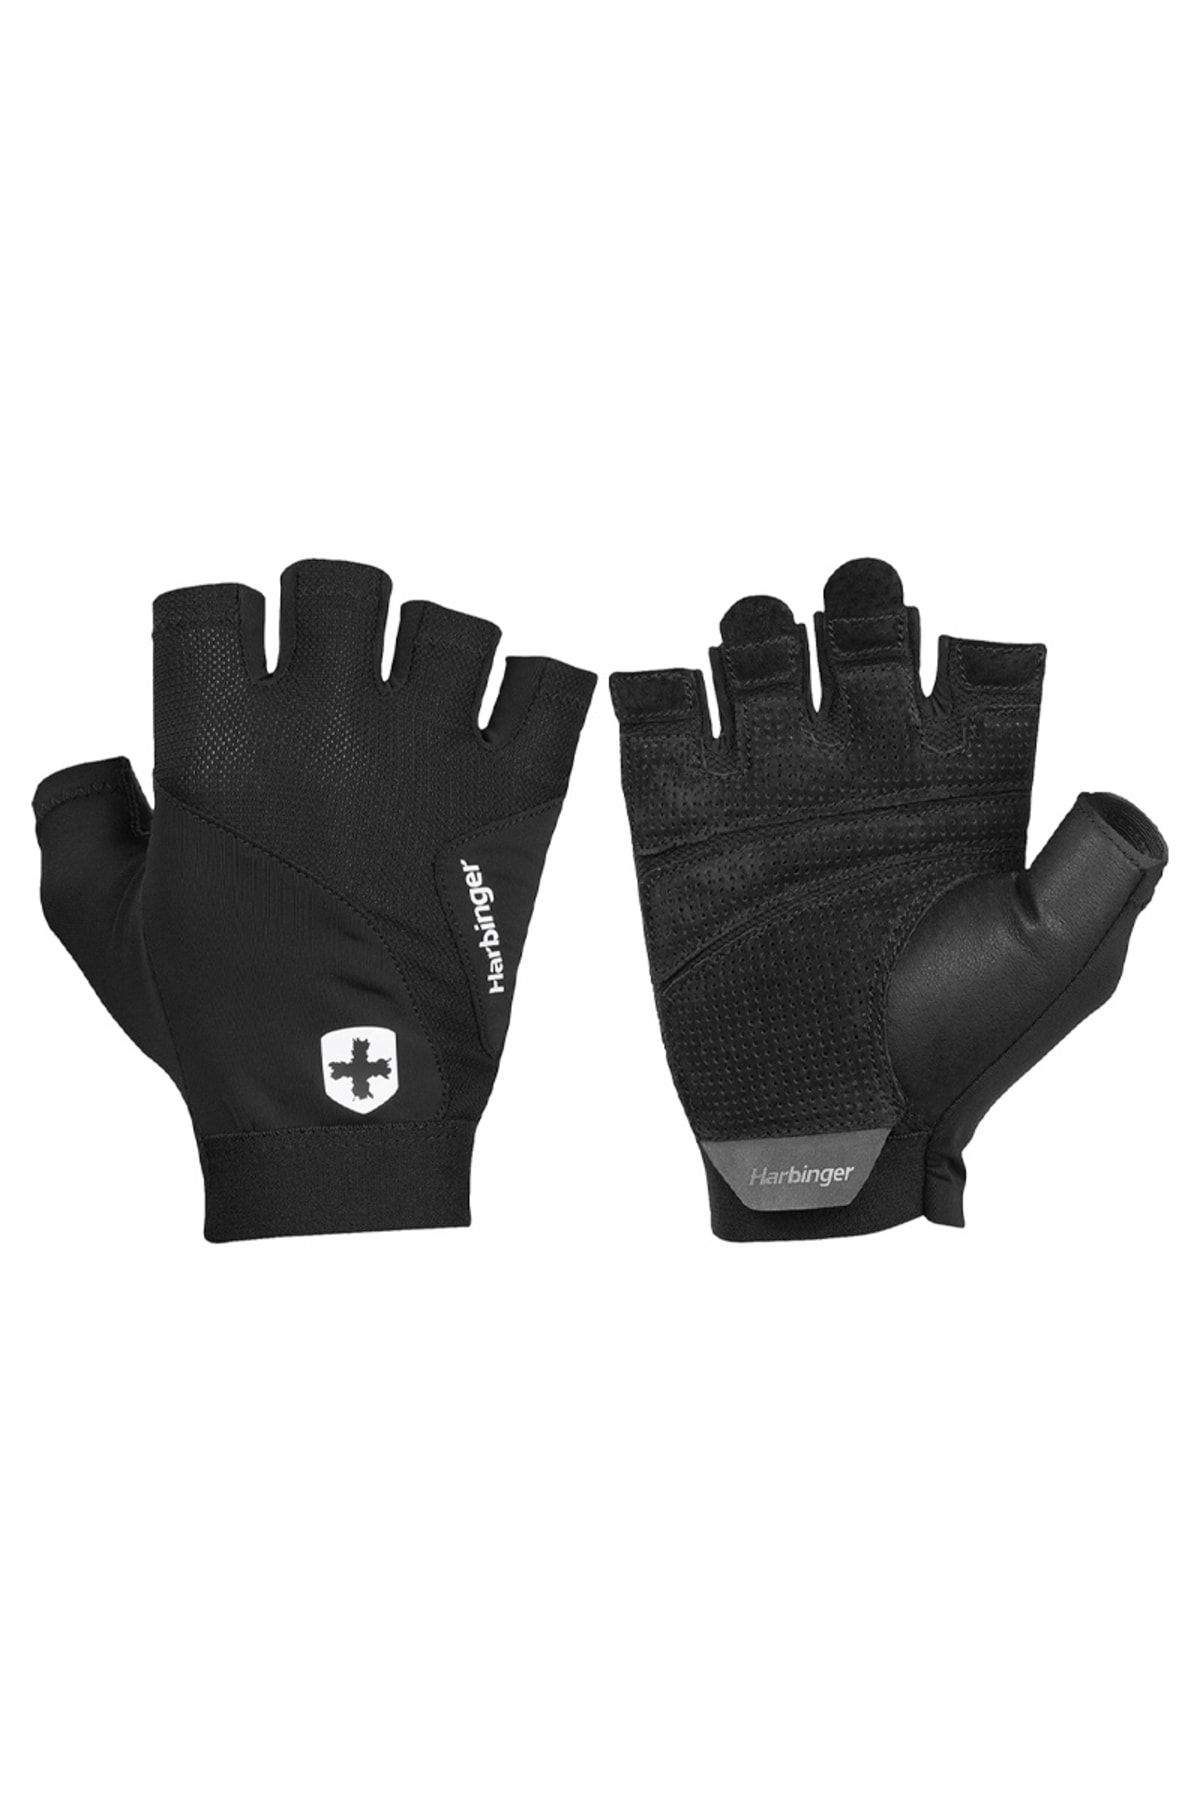 Harbinger Flexfit Gloves Ağırlık Eldiveni Siyah